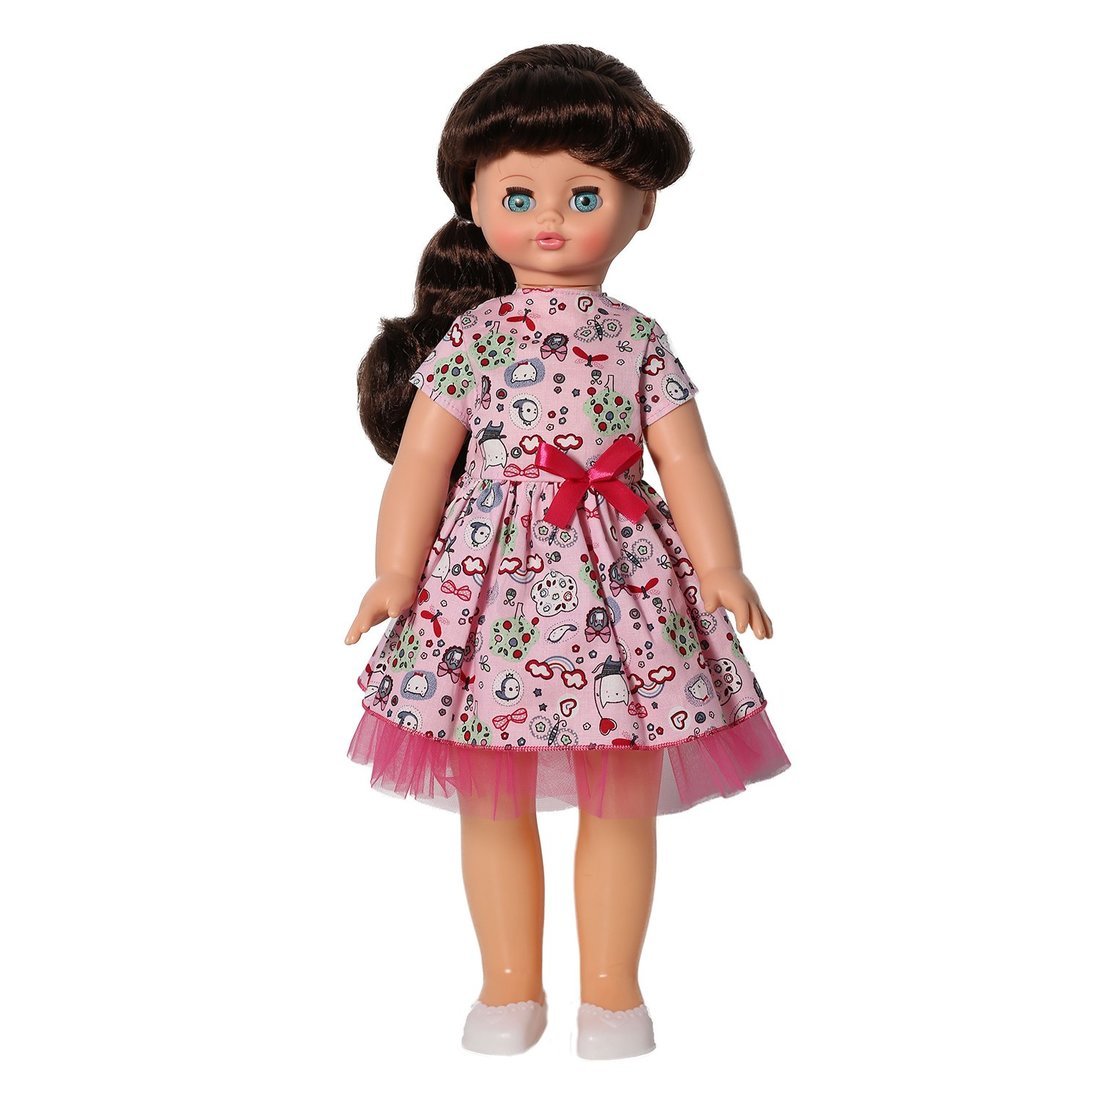 Кукла Весна Алиса клубничный мусс 55 см озвученная В3900/о кукла алиса клубничный мусс со звуковым устройством 55 см